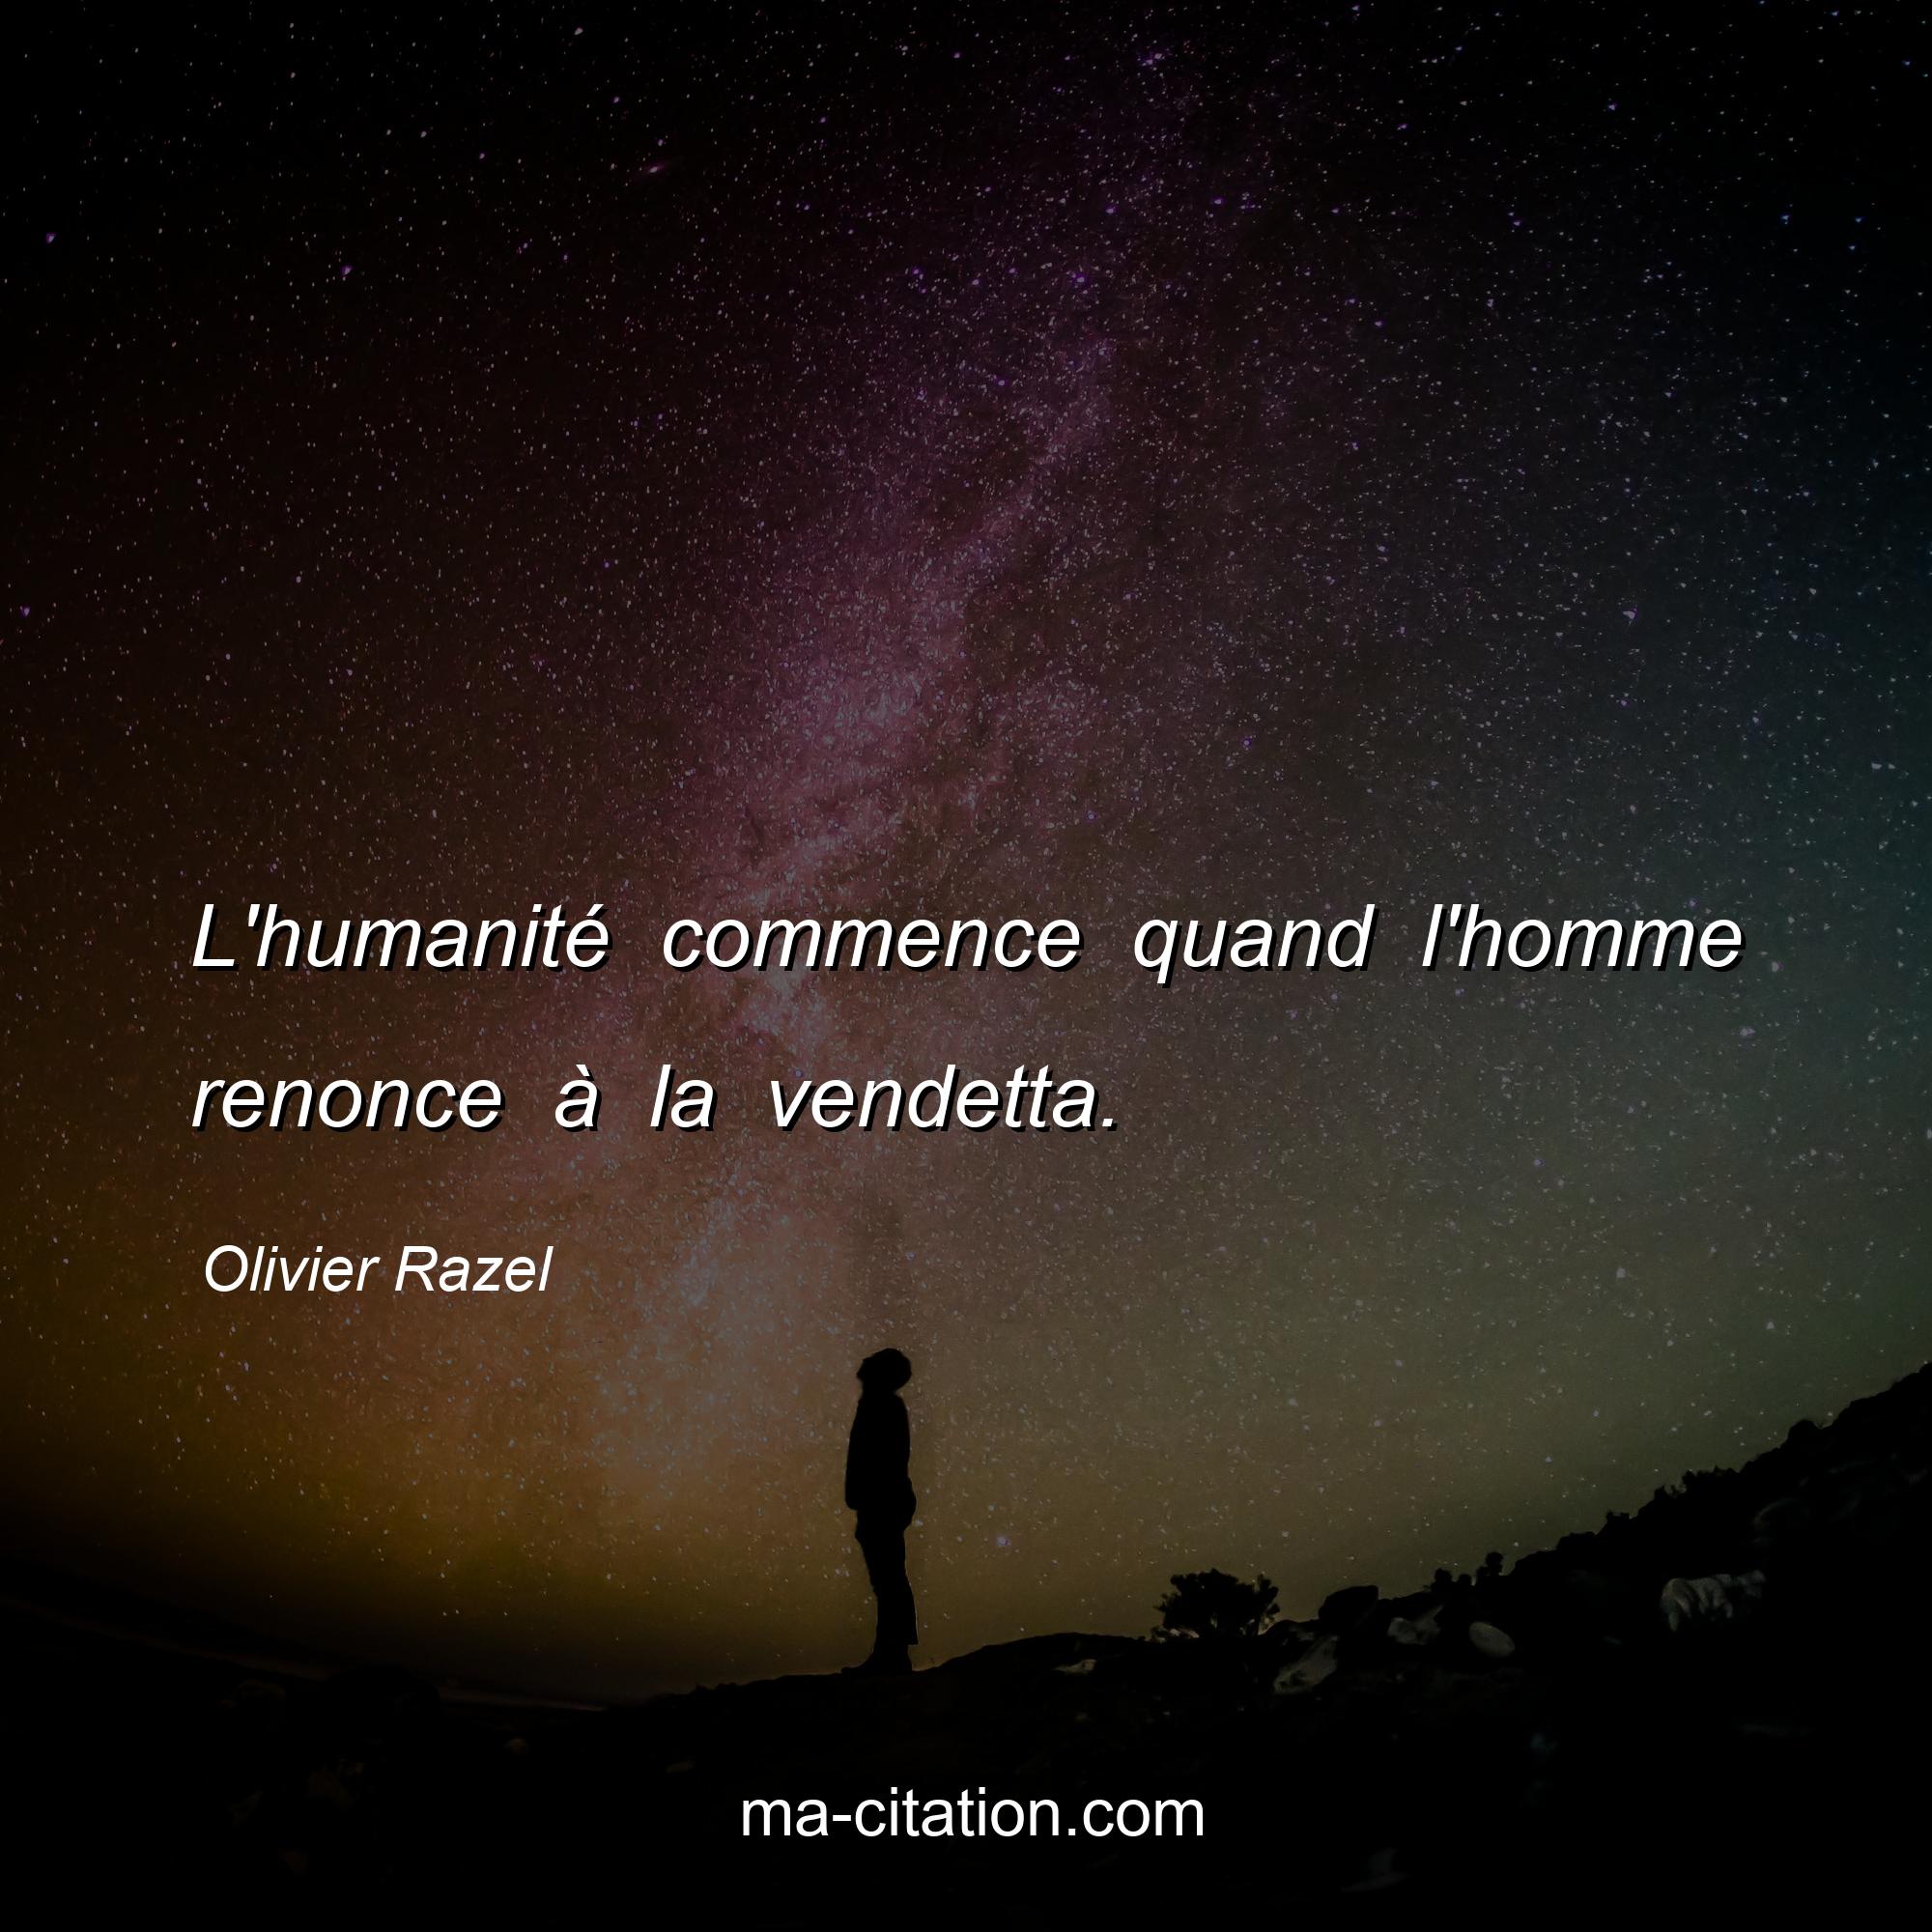 Olivier Razel : L'humanité commence quand l'homme renonce à la vendetta.